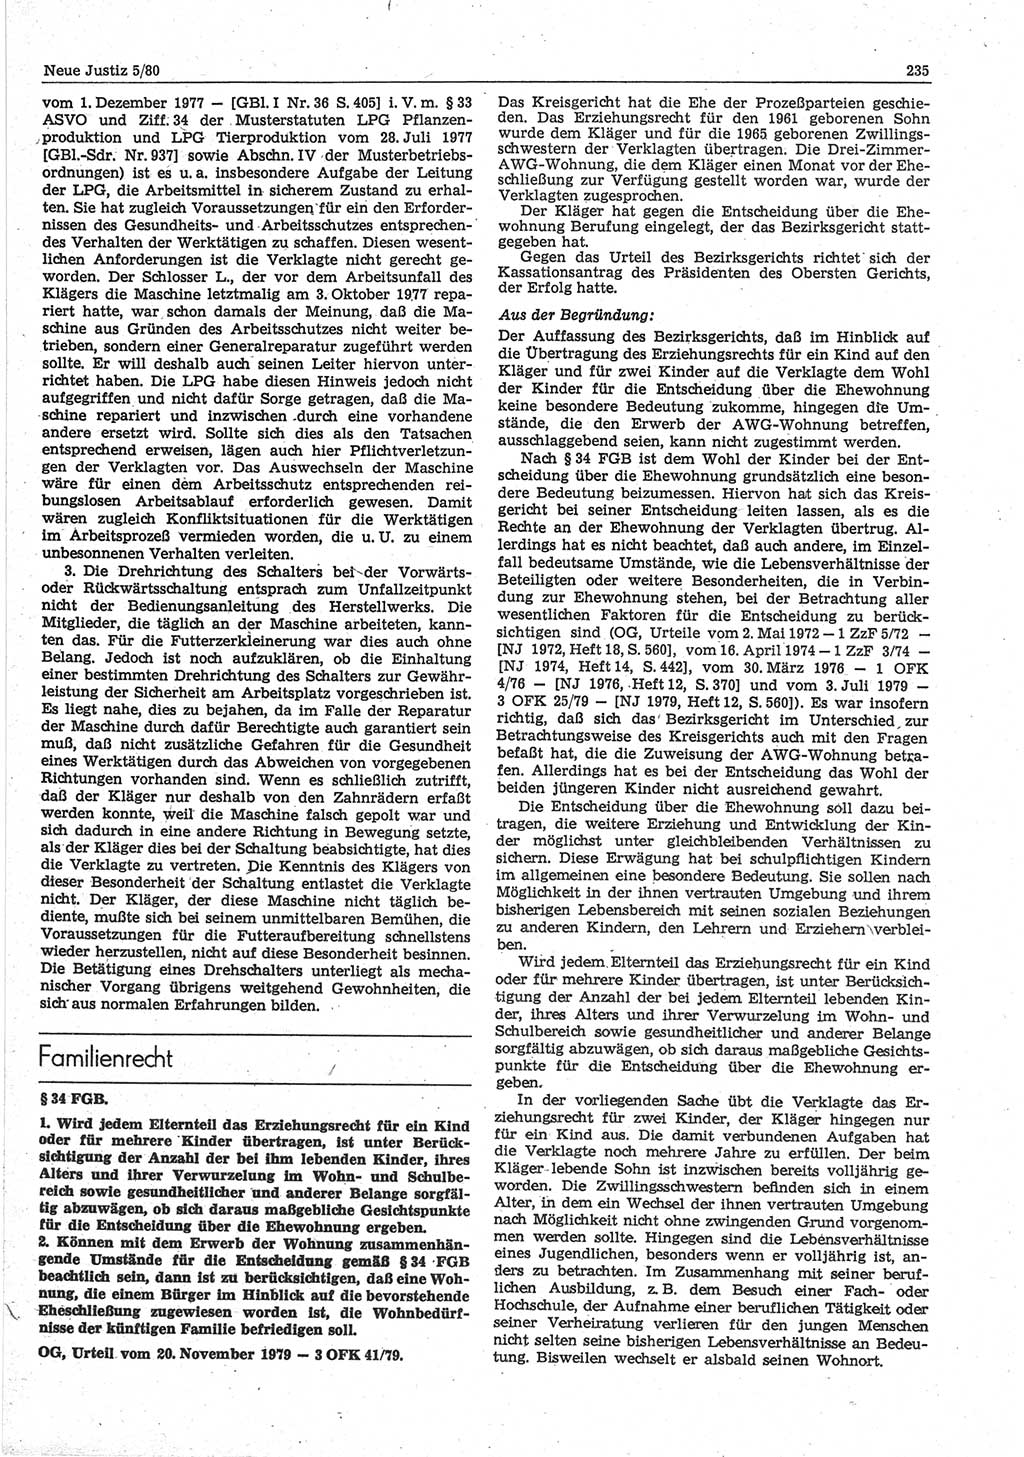 Neue Justiz (NJ), Zeitschrift für sozialistisches Recht und Gesetzlichkeit [Deutsche Demokratische Republik (DDR)], 34. Jahrgang 1980, Seite 235 (NJ DDR 1980, S. 235)